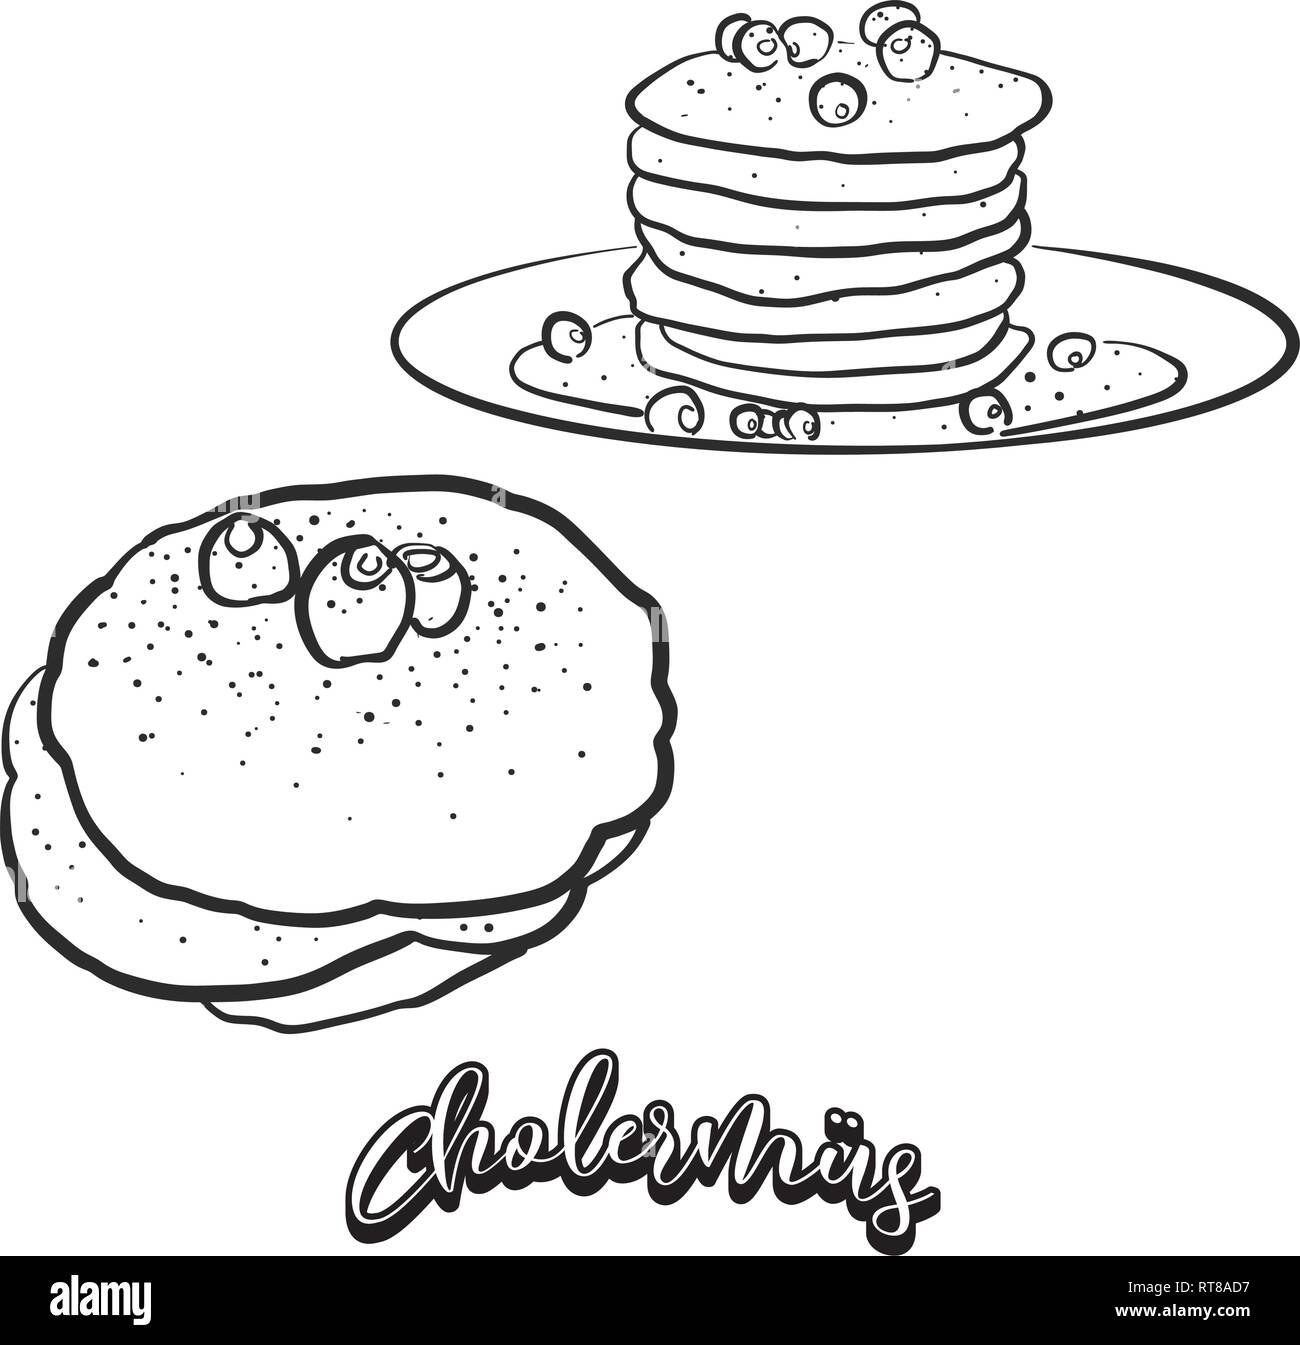 Croquis à main Cholermüs de pain. Dessin vectoriel de Pancake, aliments habituellement connu en Suisse. Illustration du pain series. Illustration de Vecteur